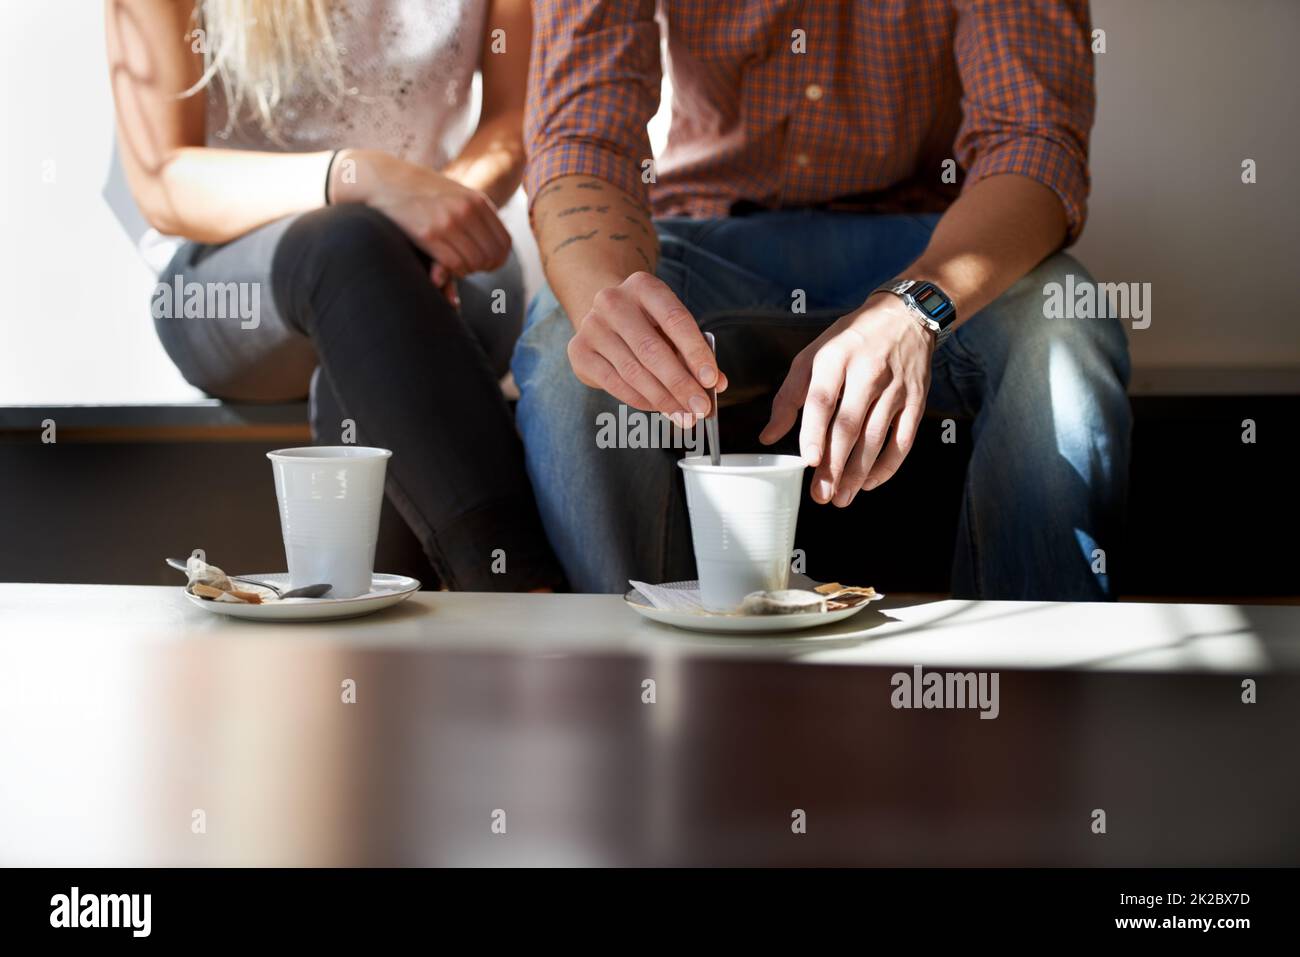 Sie lieben ihren Kaffee. Zugeschnittenes Bild eines jungen Paares, das Kaffee in seinem lokalen Café genießt. Stockfoto